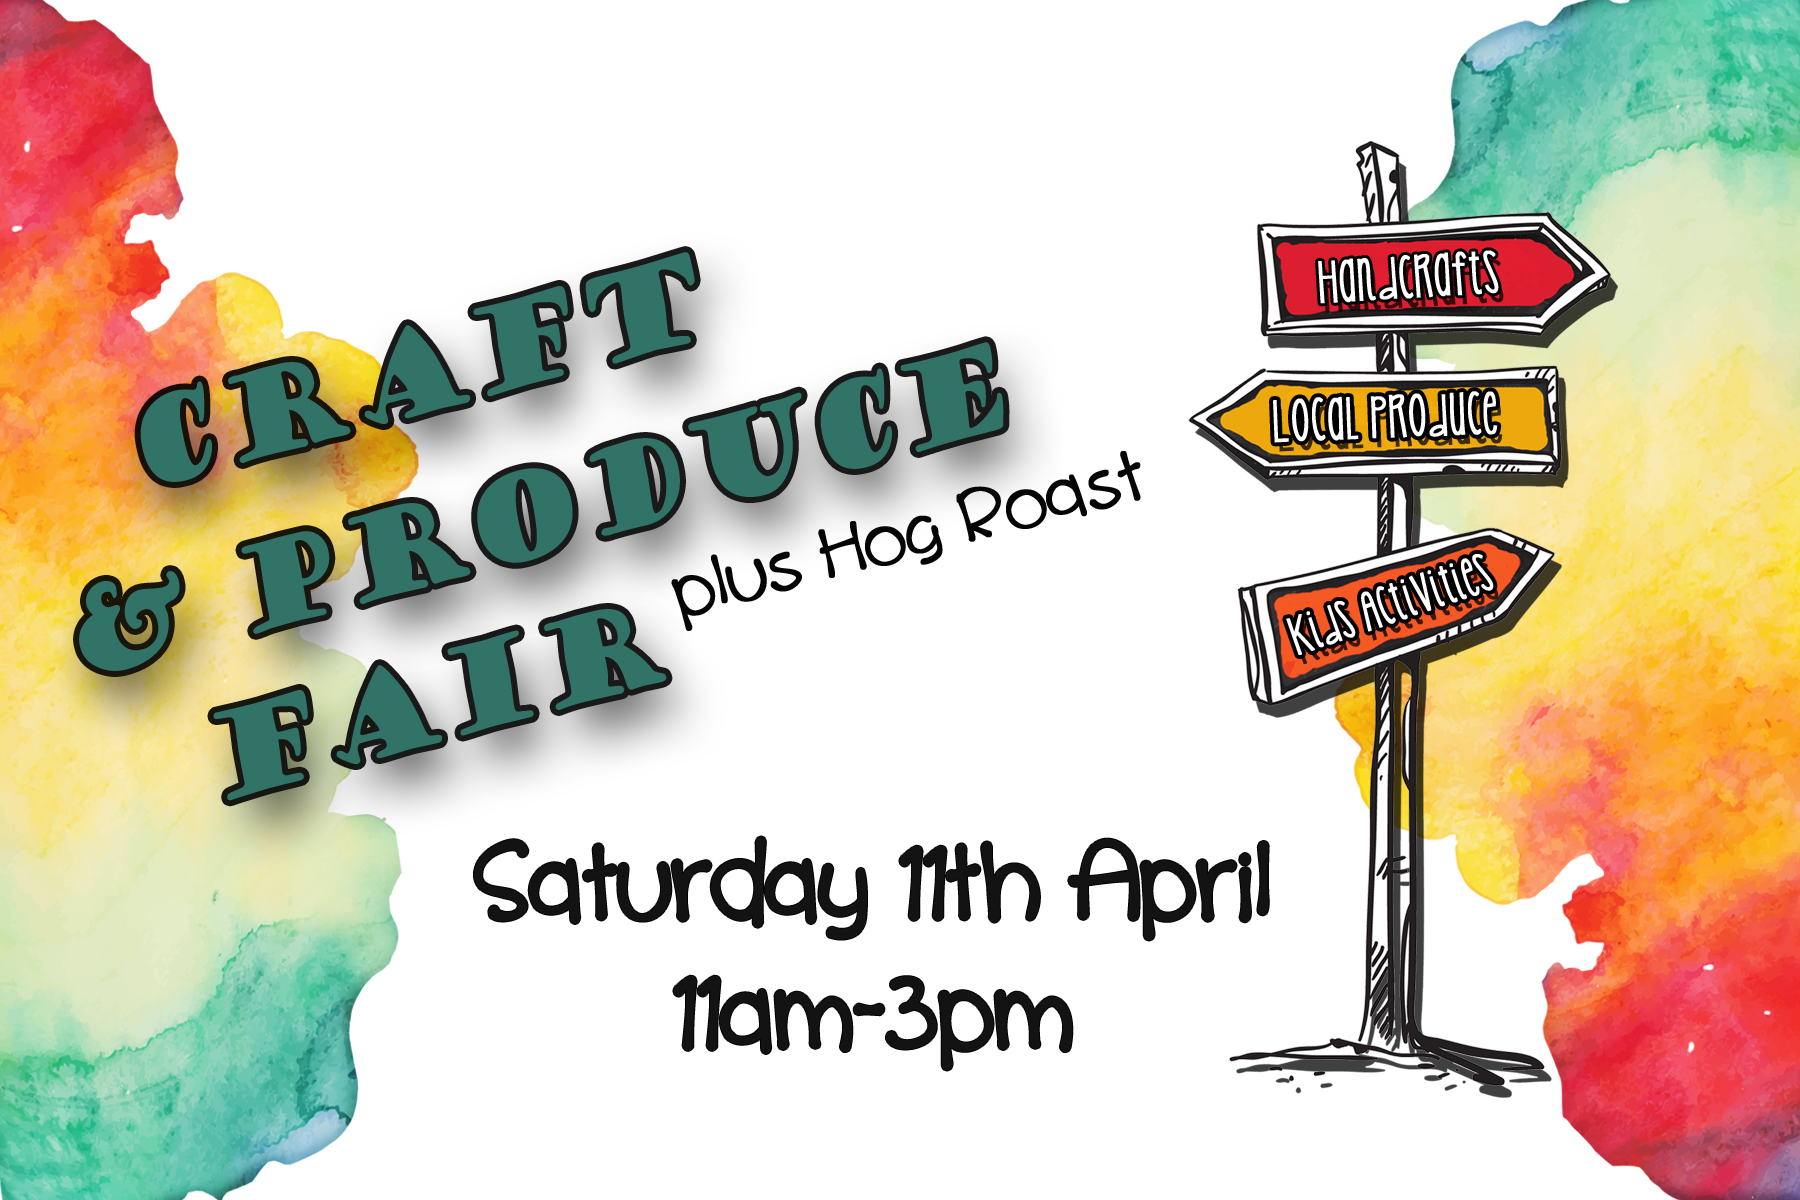 Craft & Produce Fair